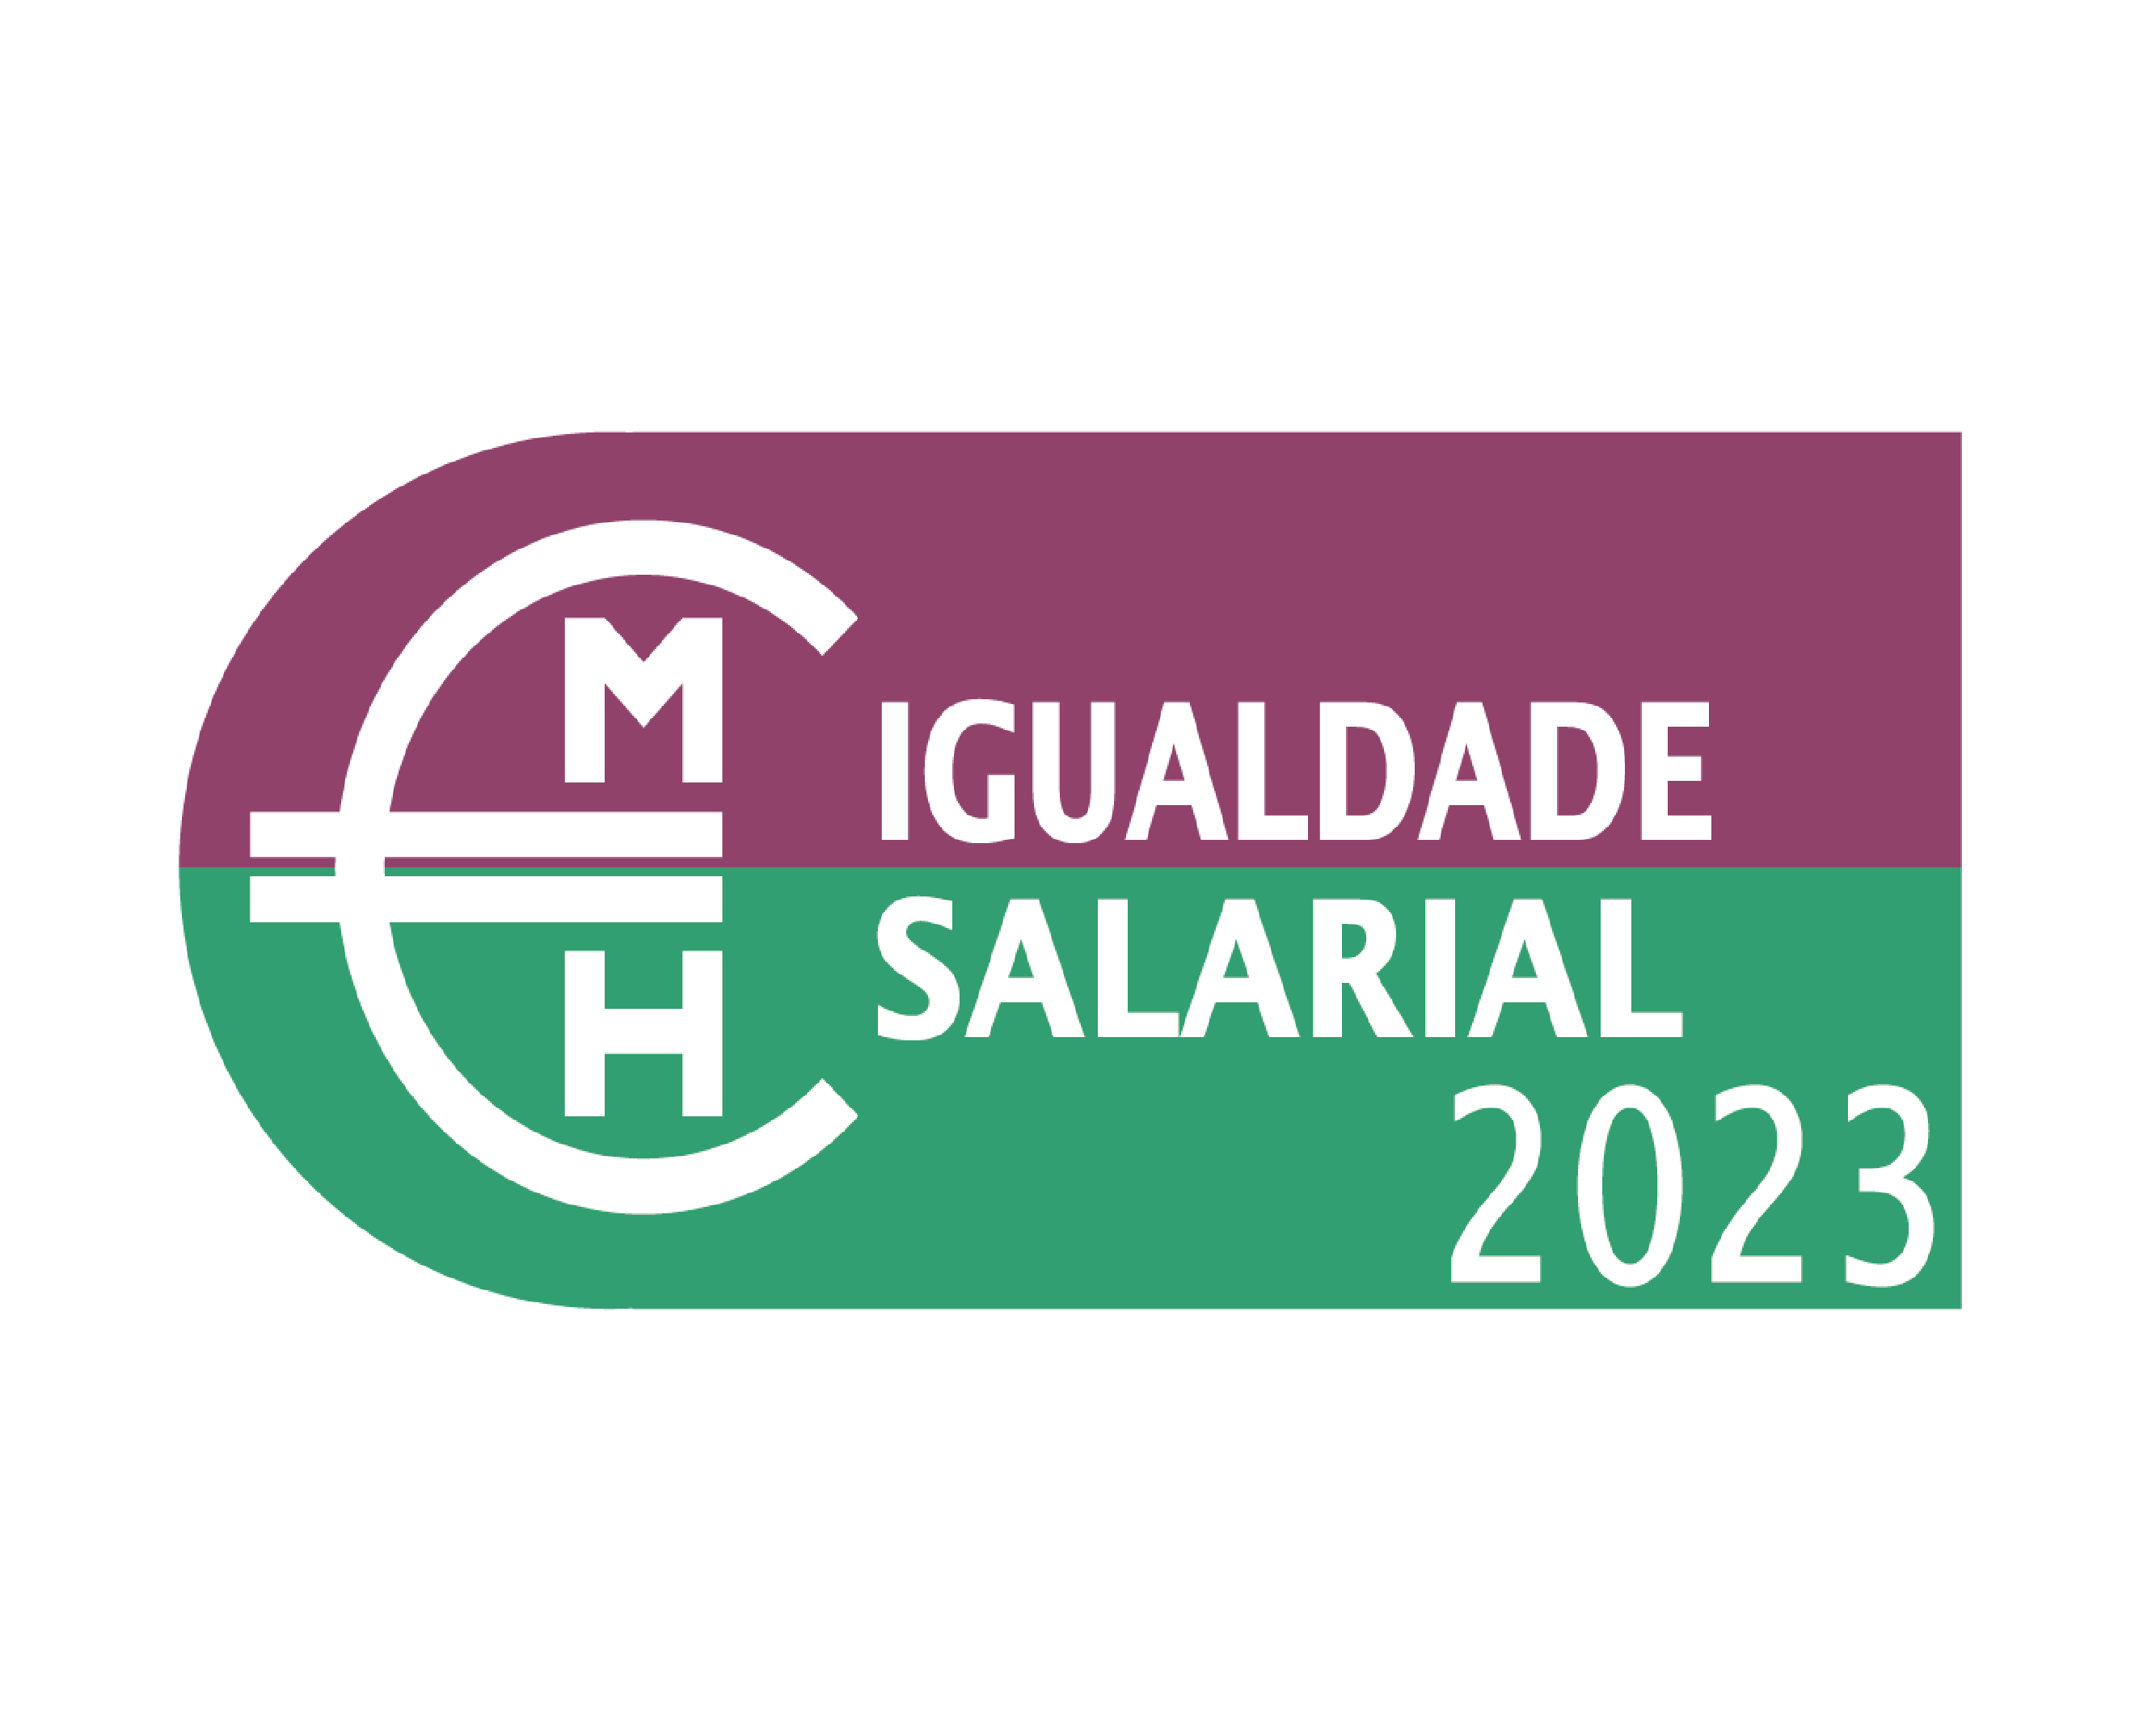 Selo de Igualdade Salarial 2023